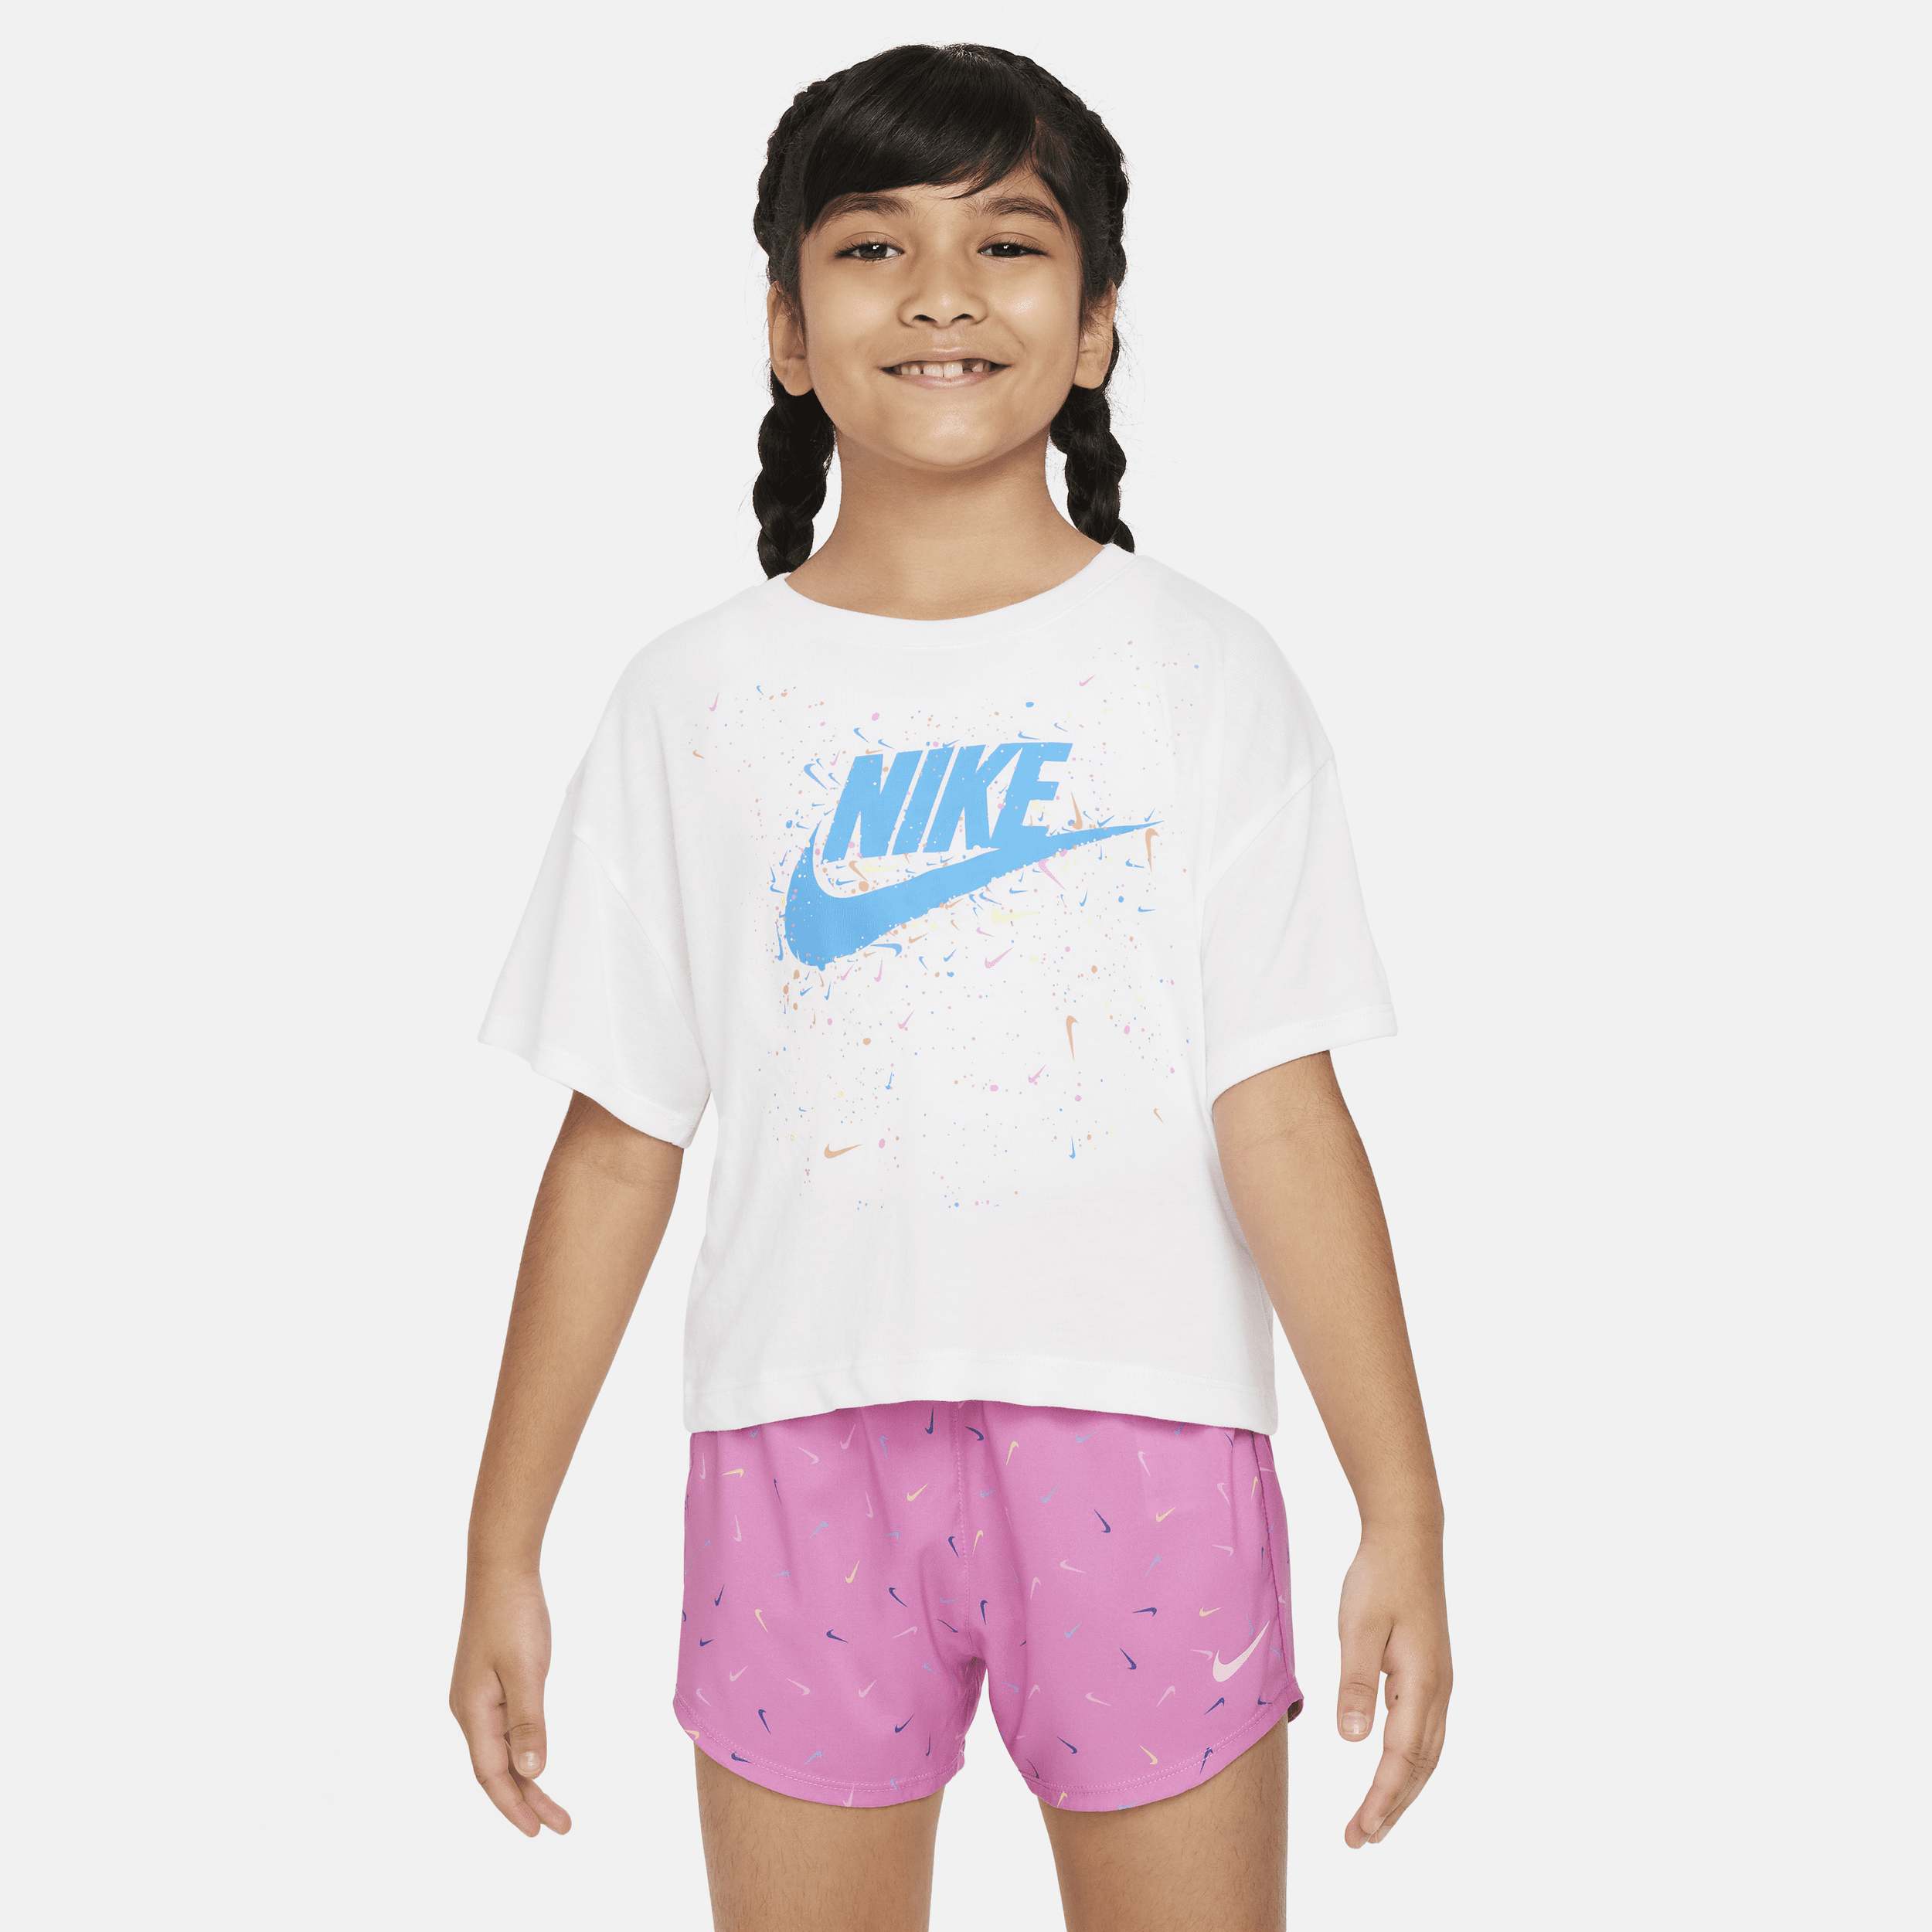 Nike-T-shirt til mindre børn - hvid